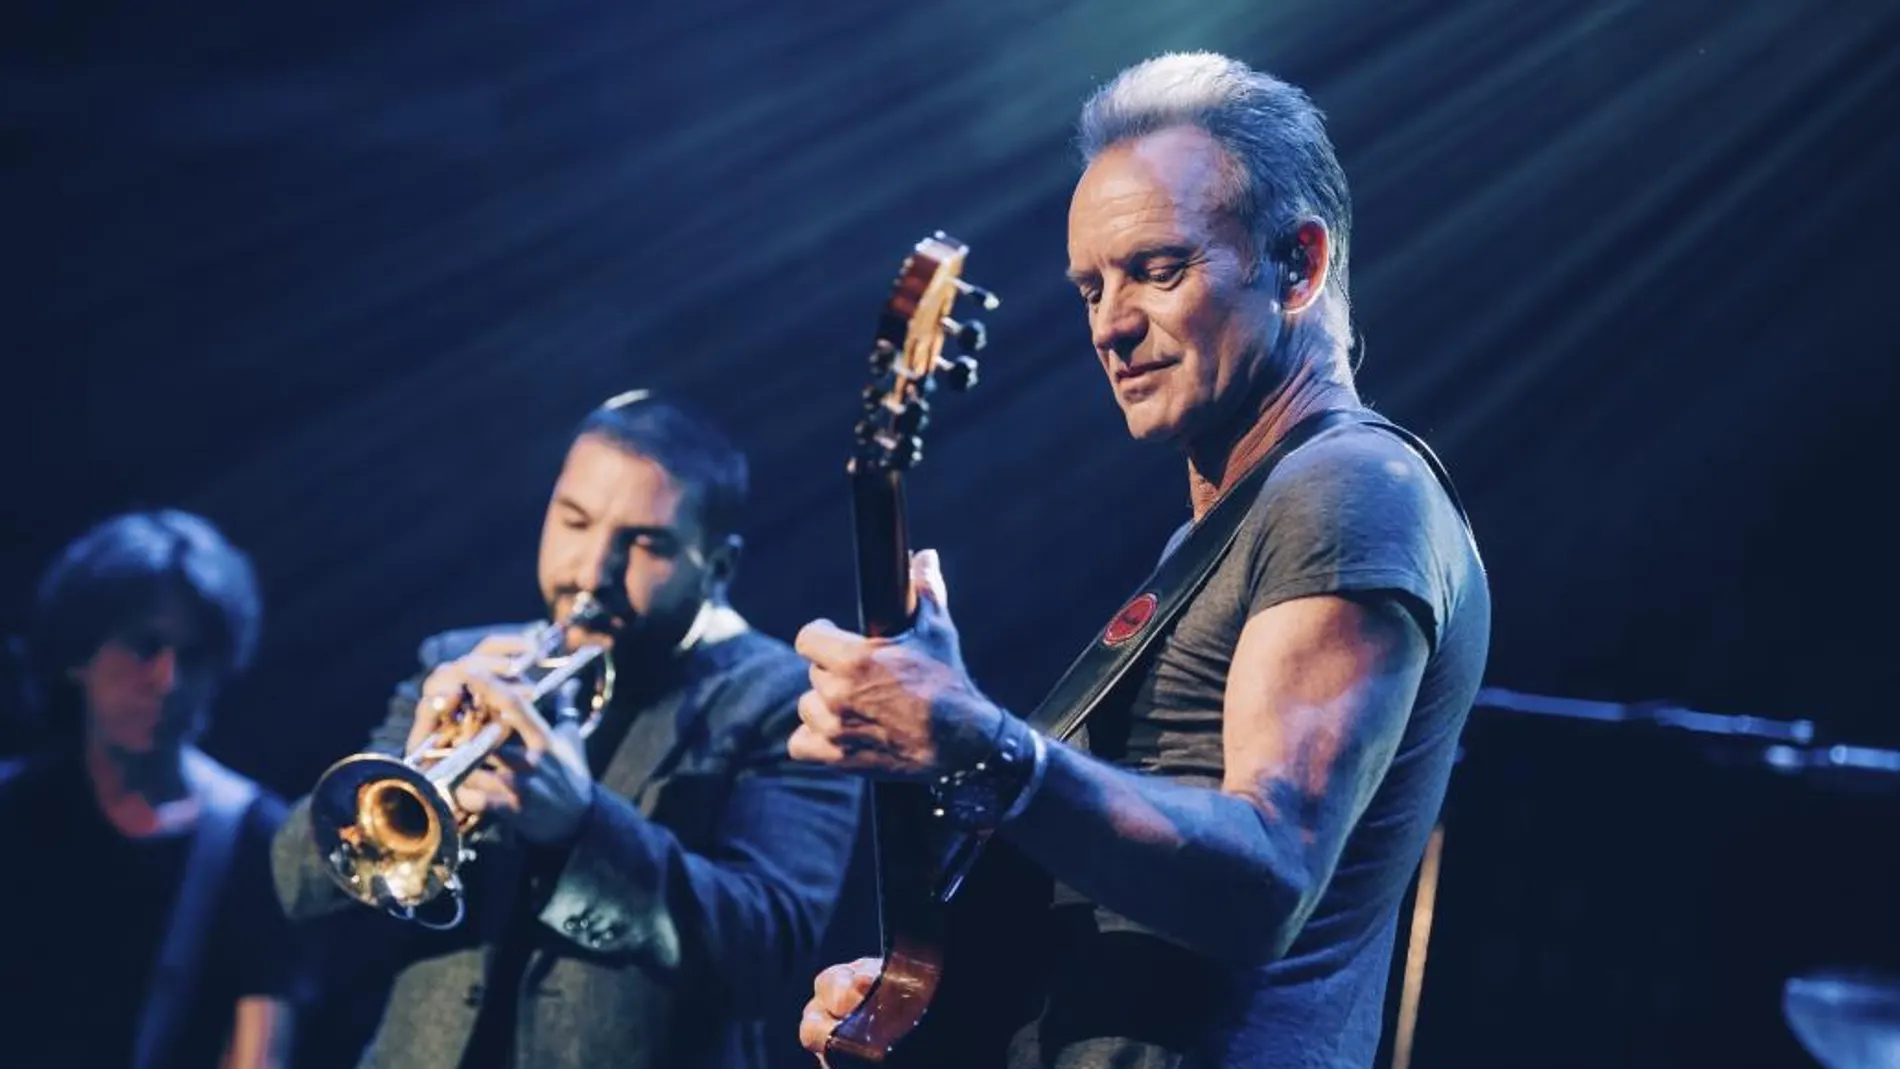 El cantante Sting ofreció un concierto benéfico en la sala Bataclan un año después de los atentados de París